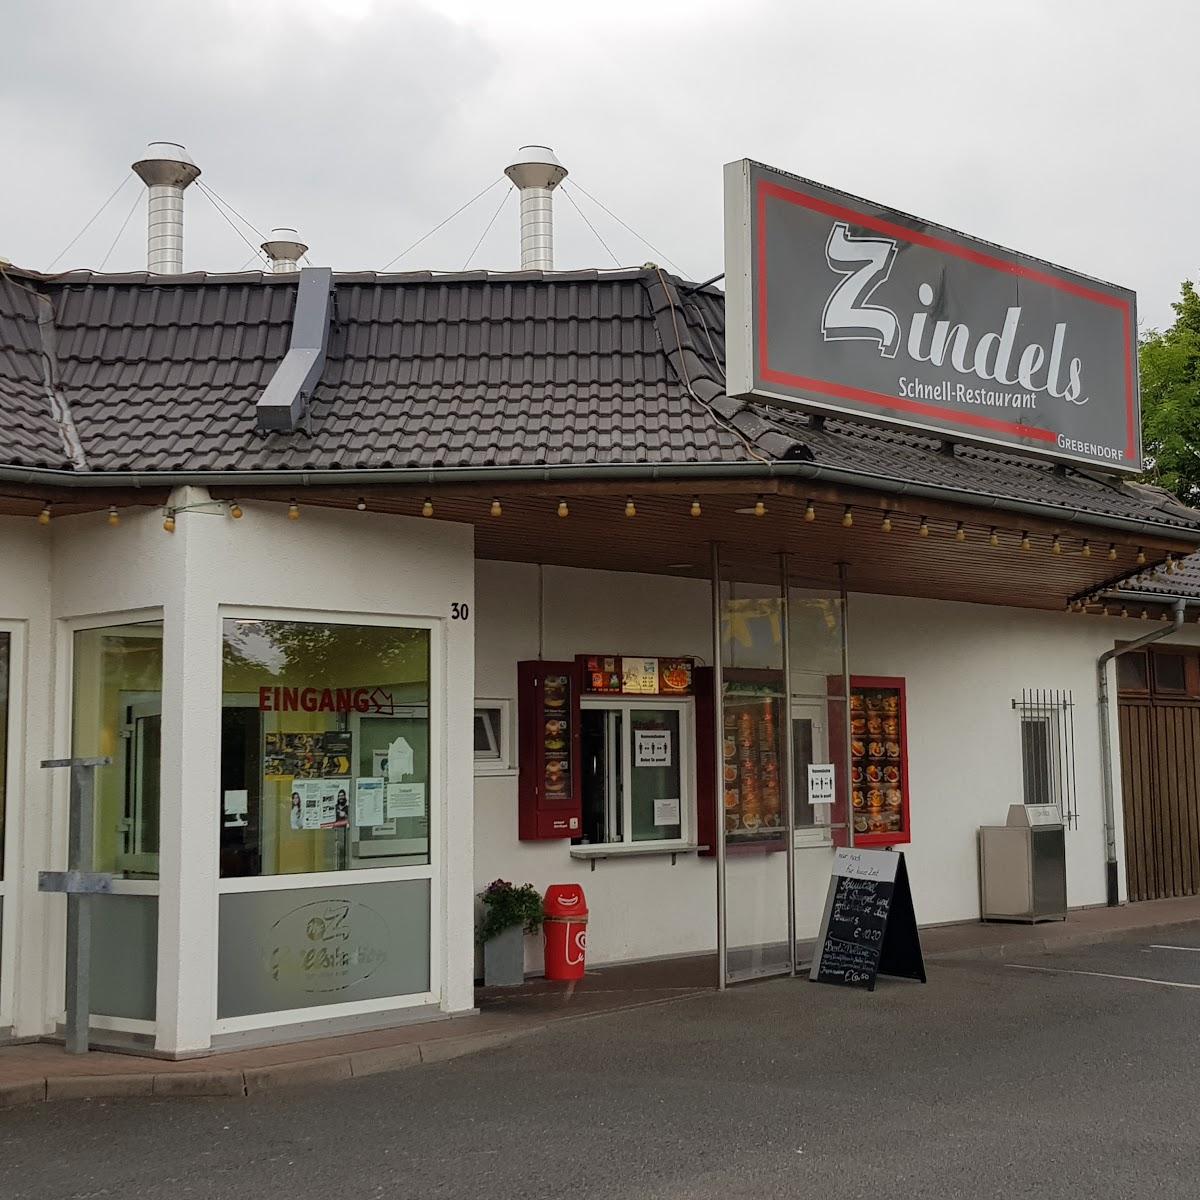 Restaurant "Drive In Zindels Schnellrestaurant Mc Z Grillstation" in Meinhard